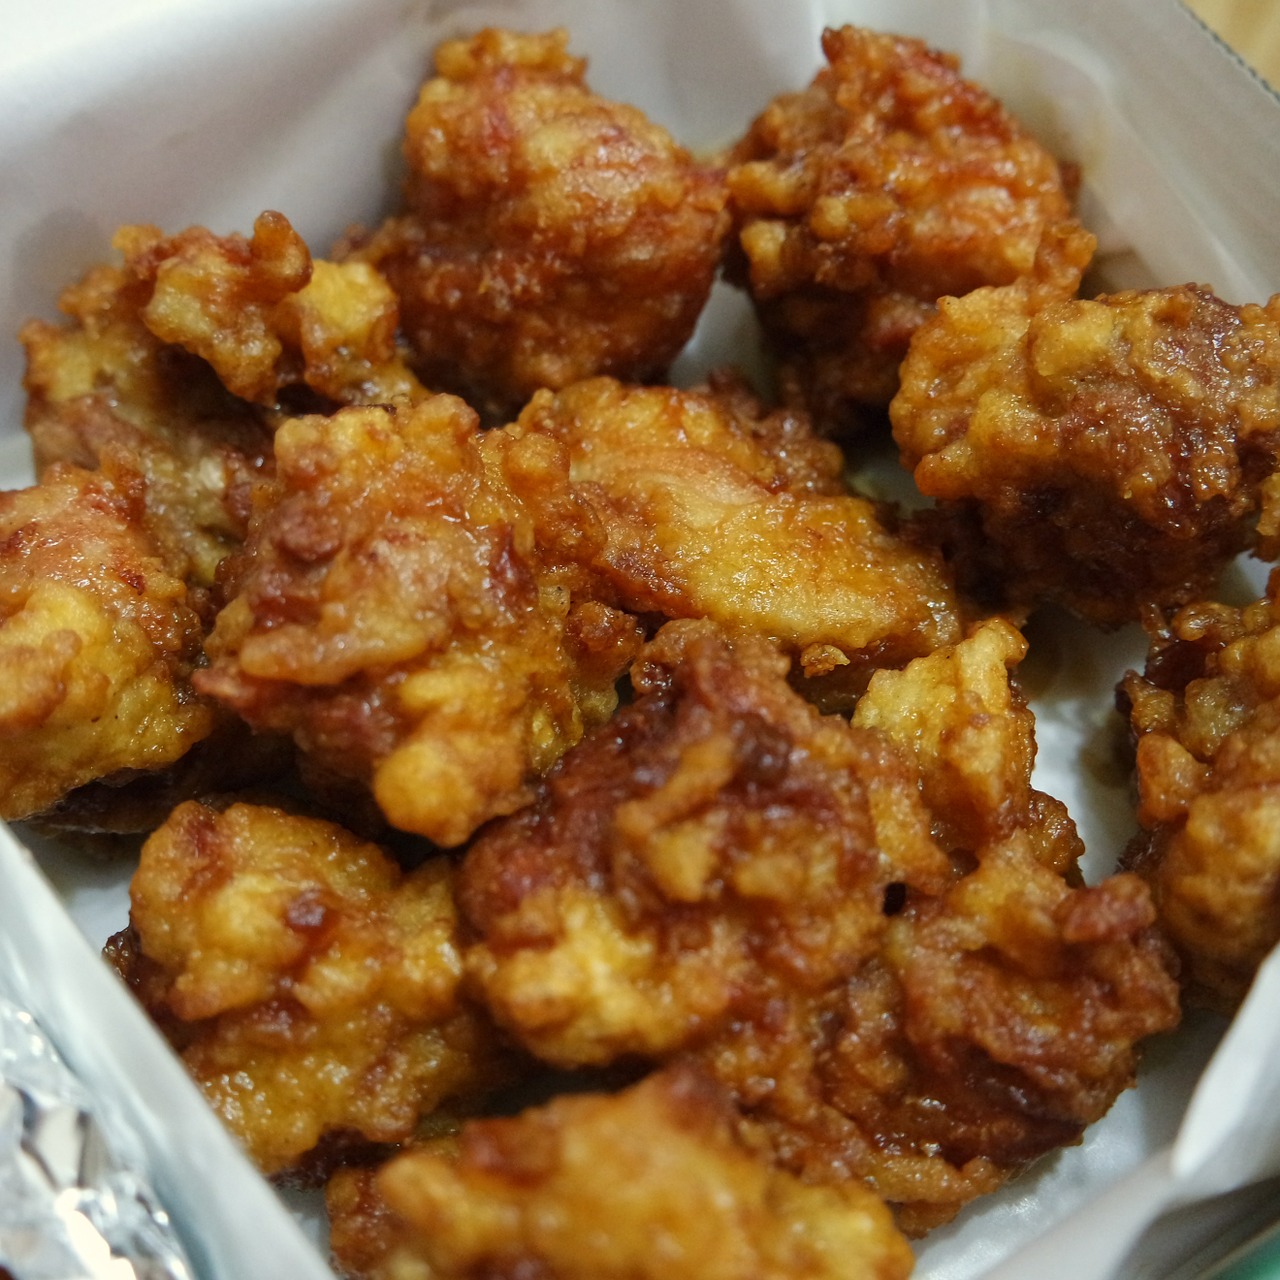 Spicy Fried Chicken